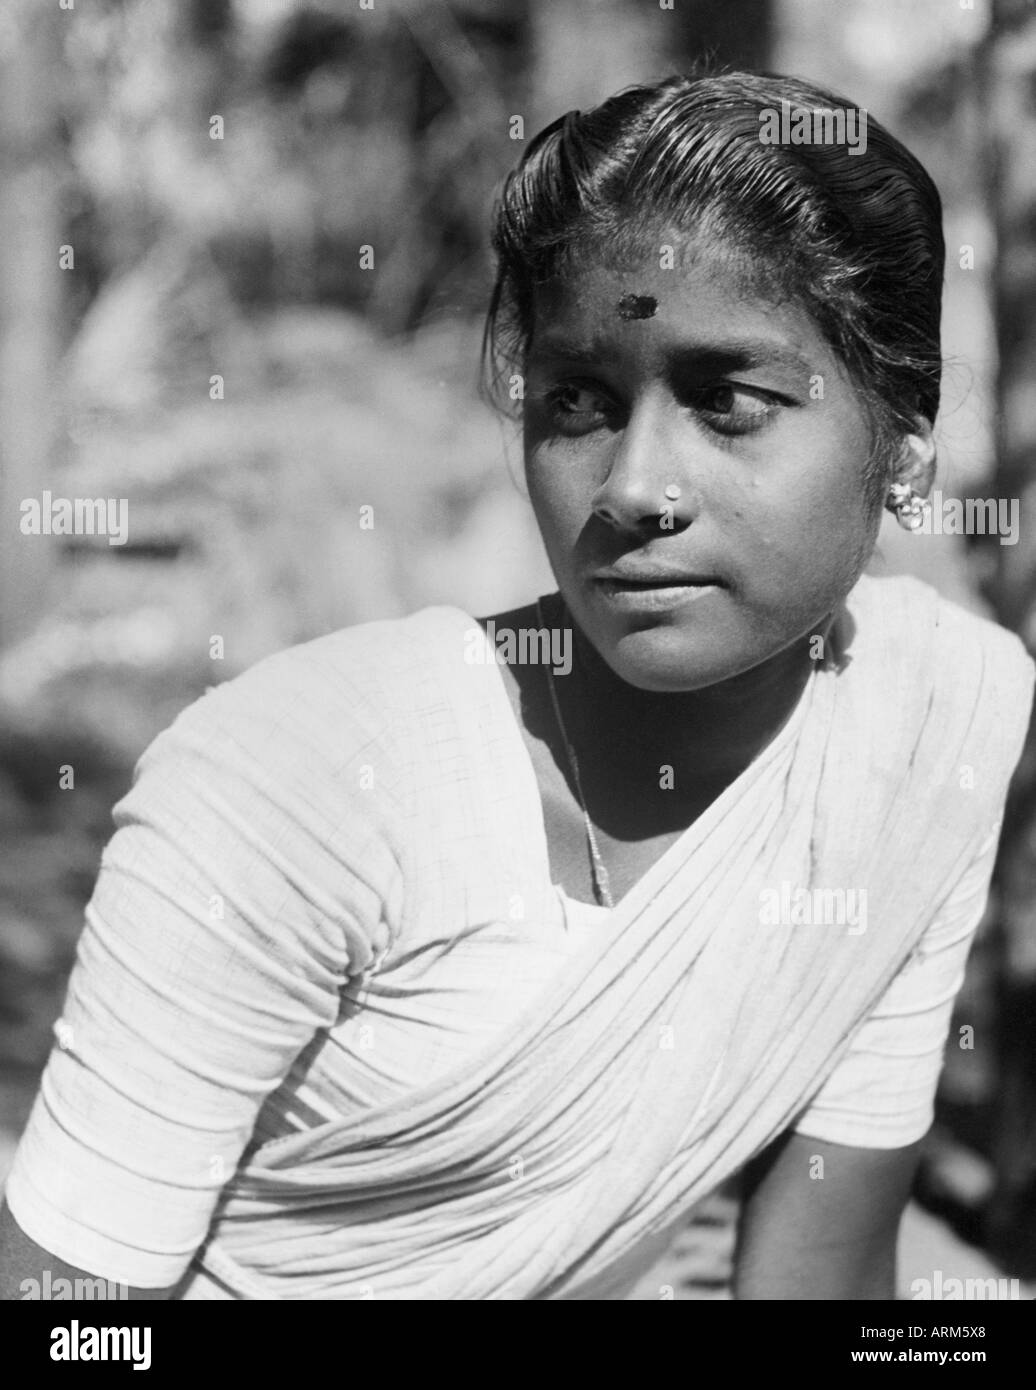 VRB101248 indische Frau im Sari und Bluse Maharashtra Indien 1940 s  Stockfotografie - Alamy